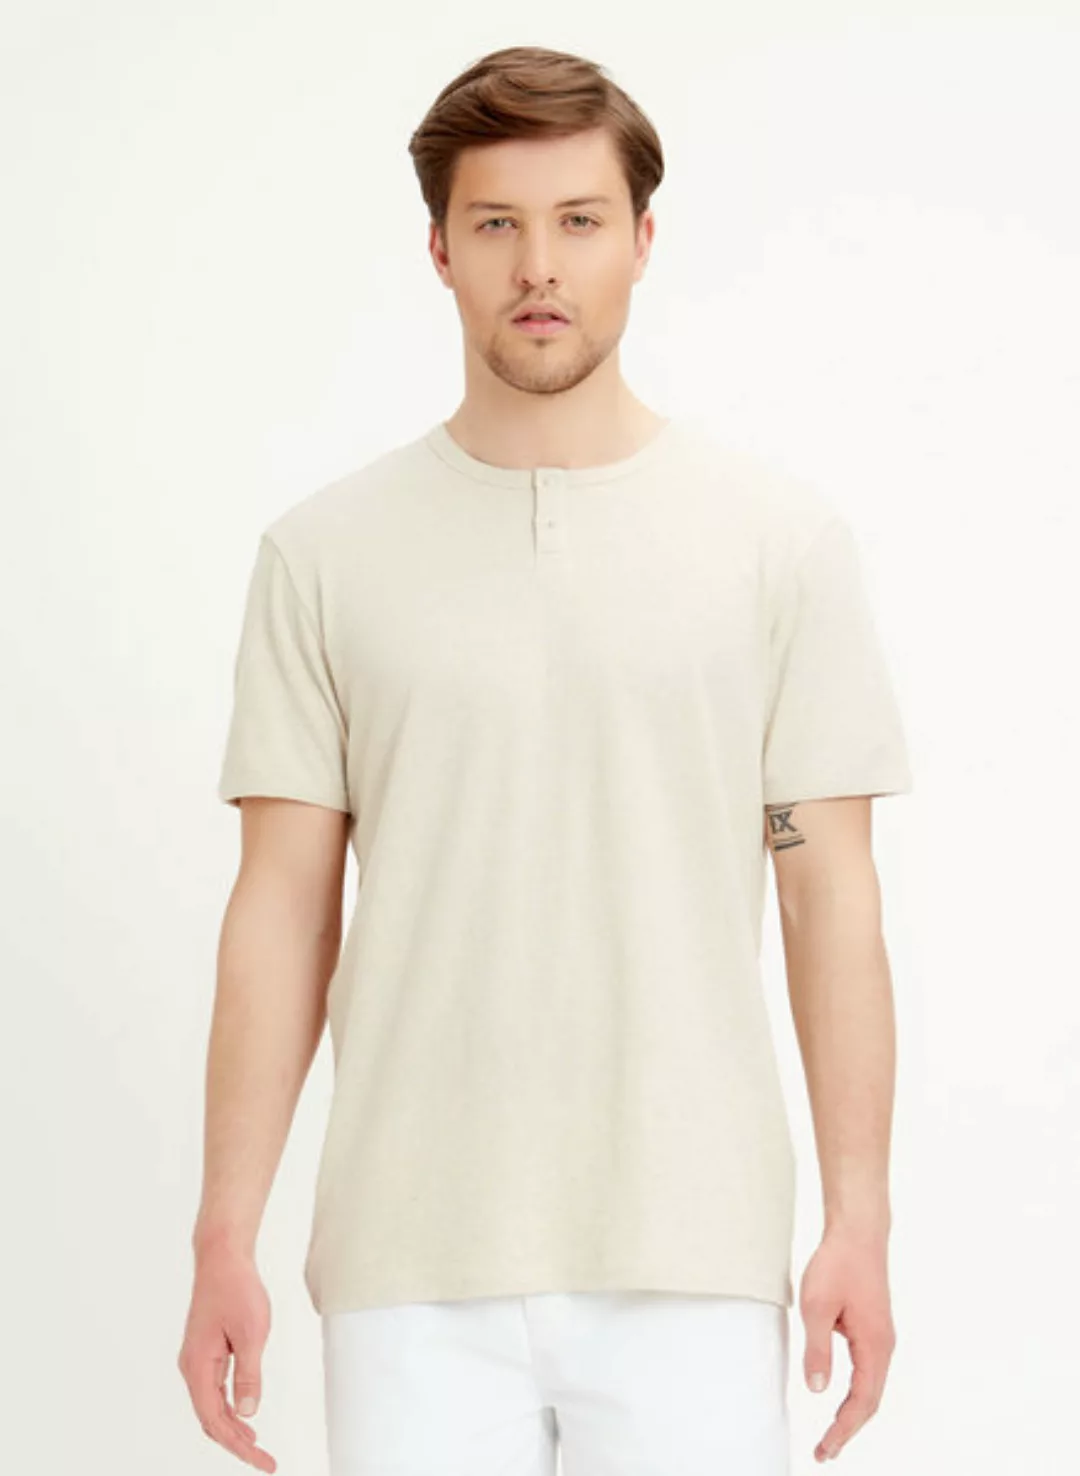 Henley-shirt Aus Leinen-bio-baumwolle-mix günstig online kaufen